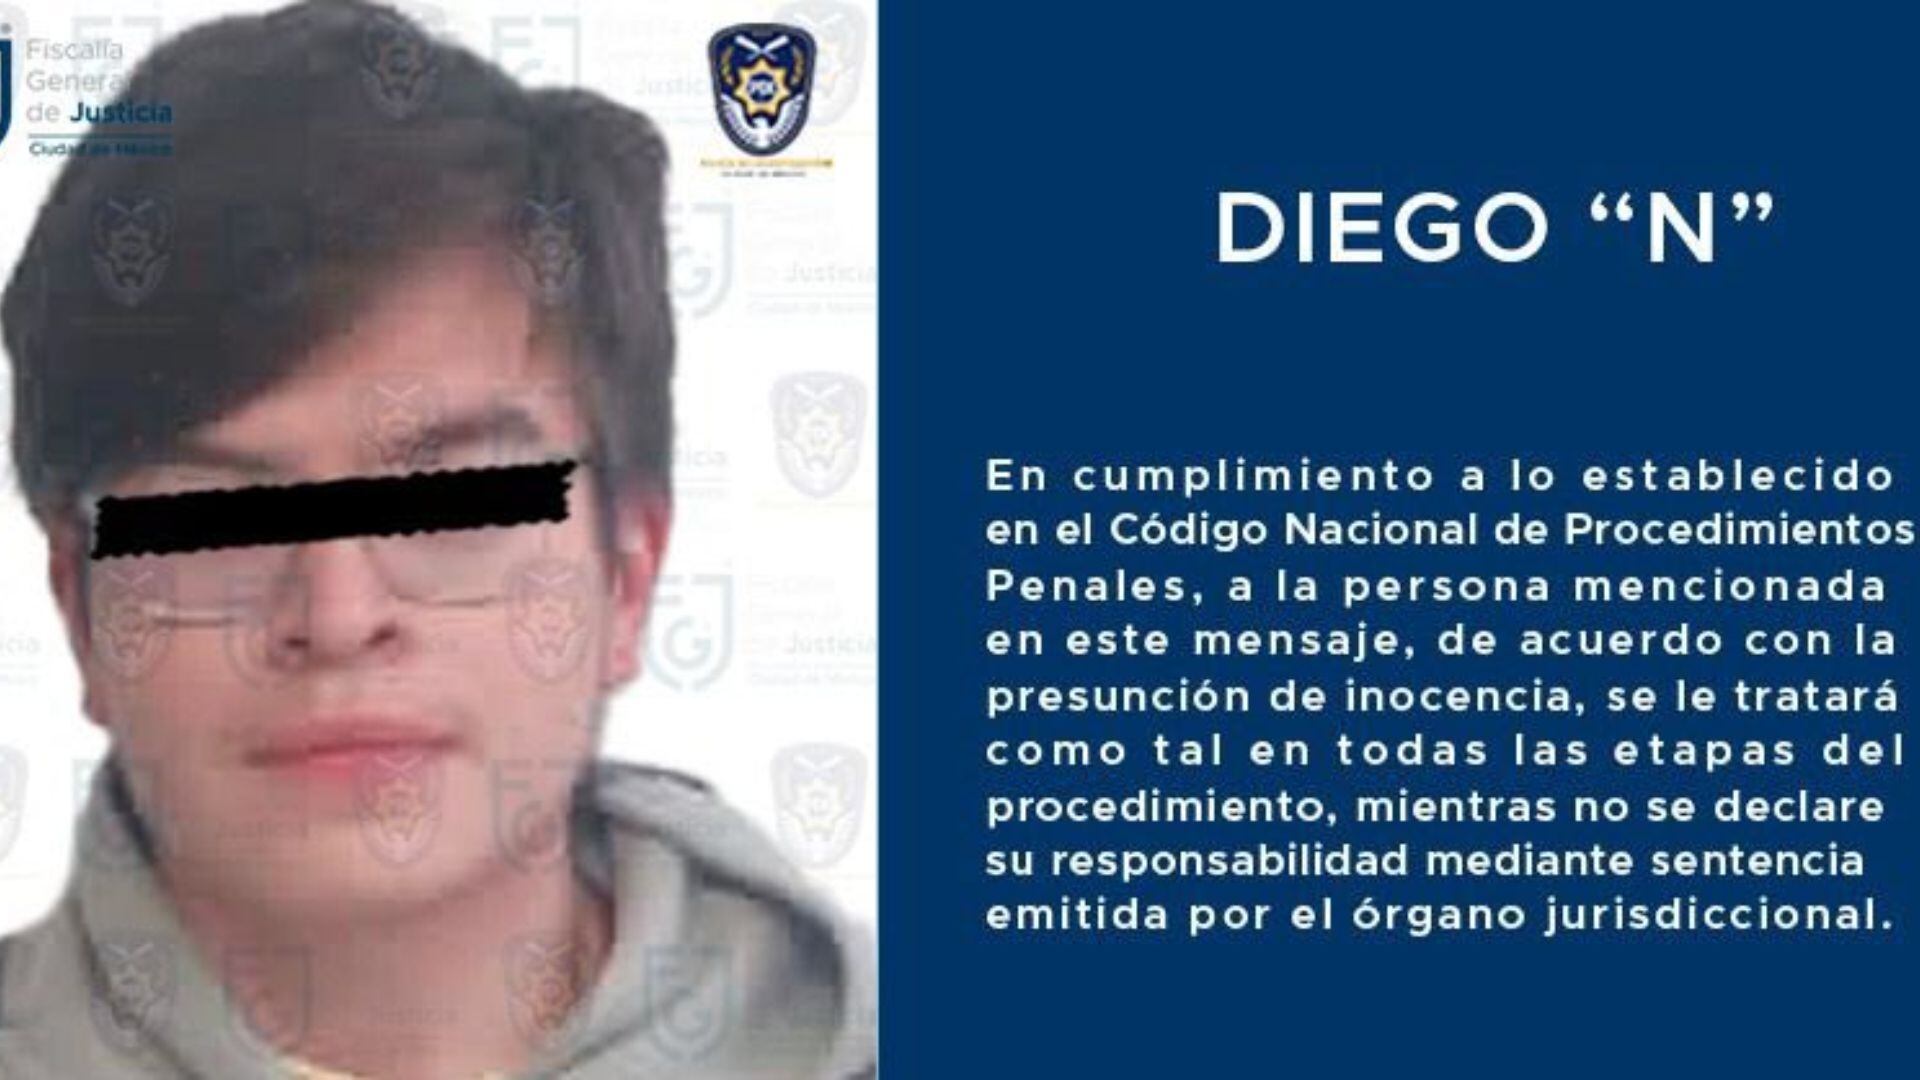 Diego "N", exalumno del IPN acusado de vender fotografías de compañeras